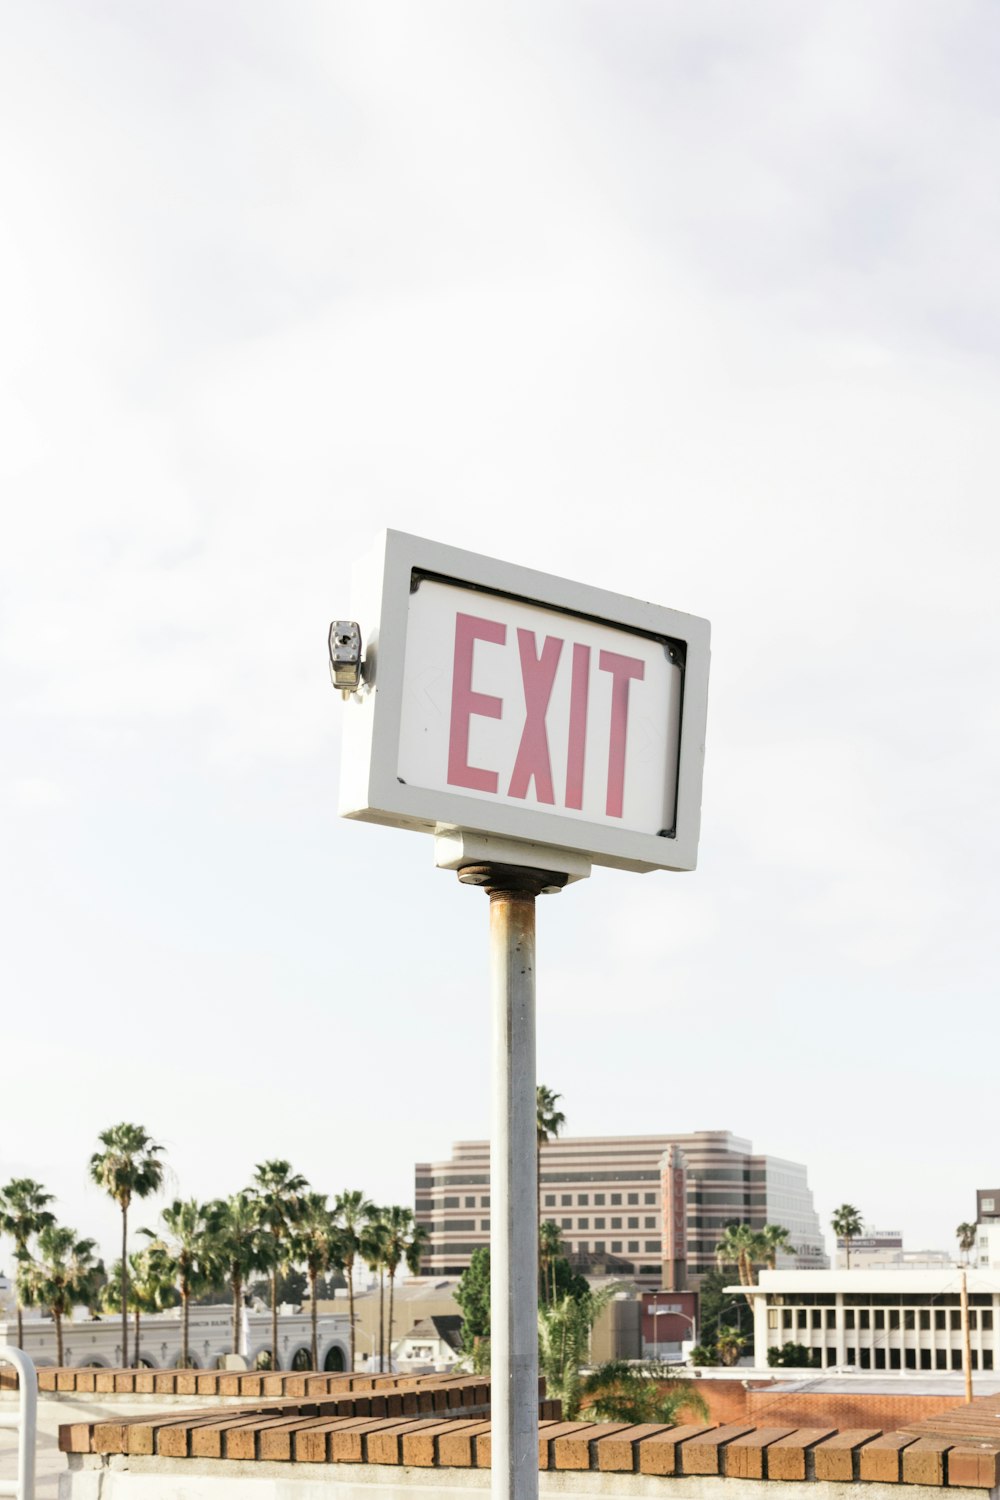 Exit signage near concrete building